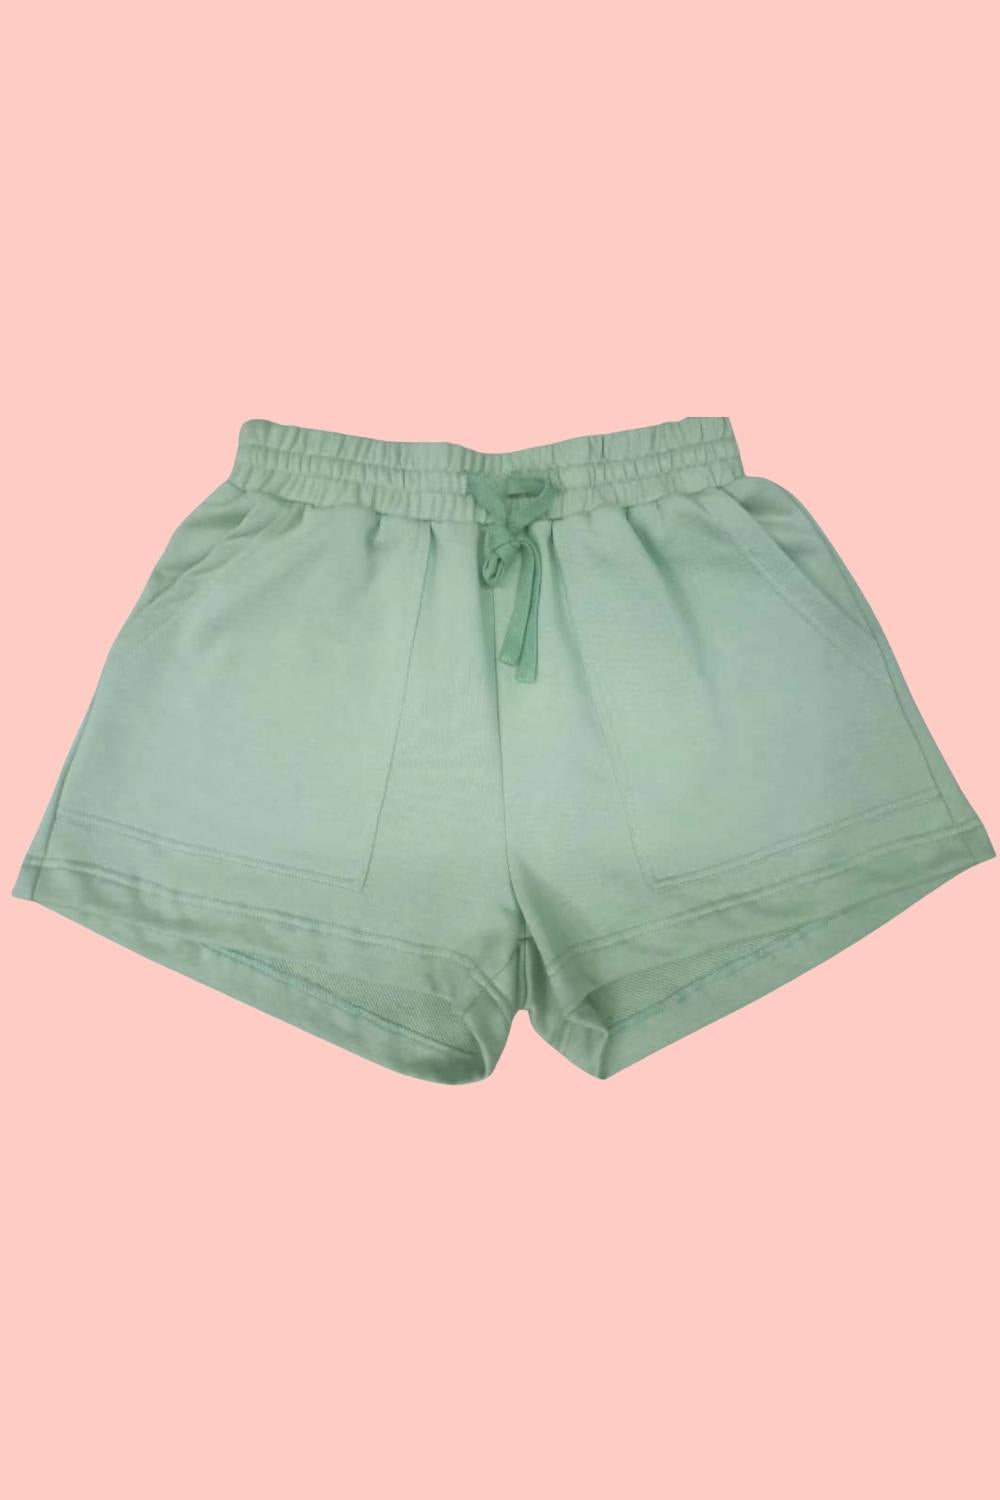 The Kadi Shorts - Sage Green